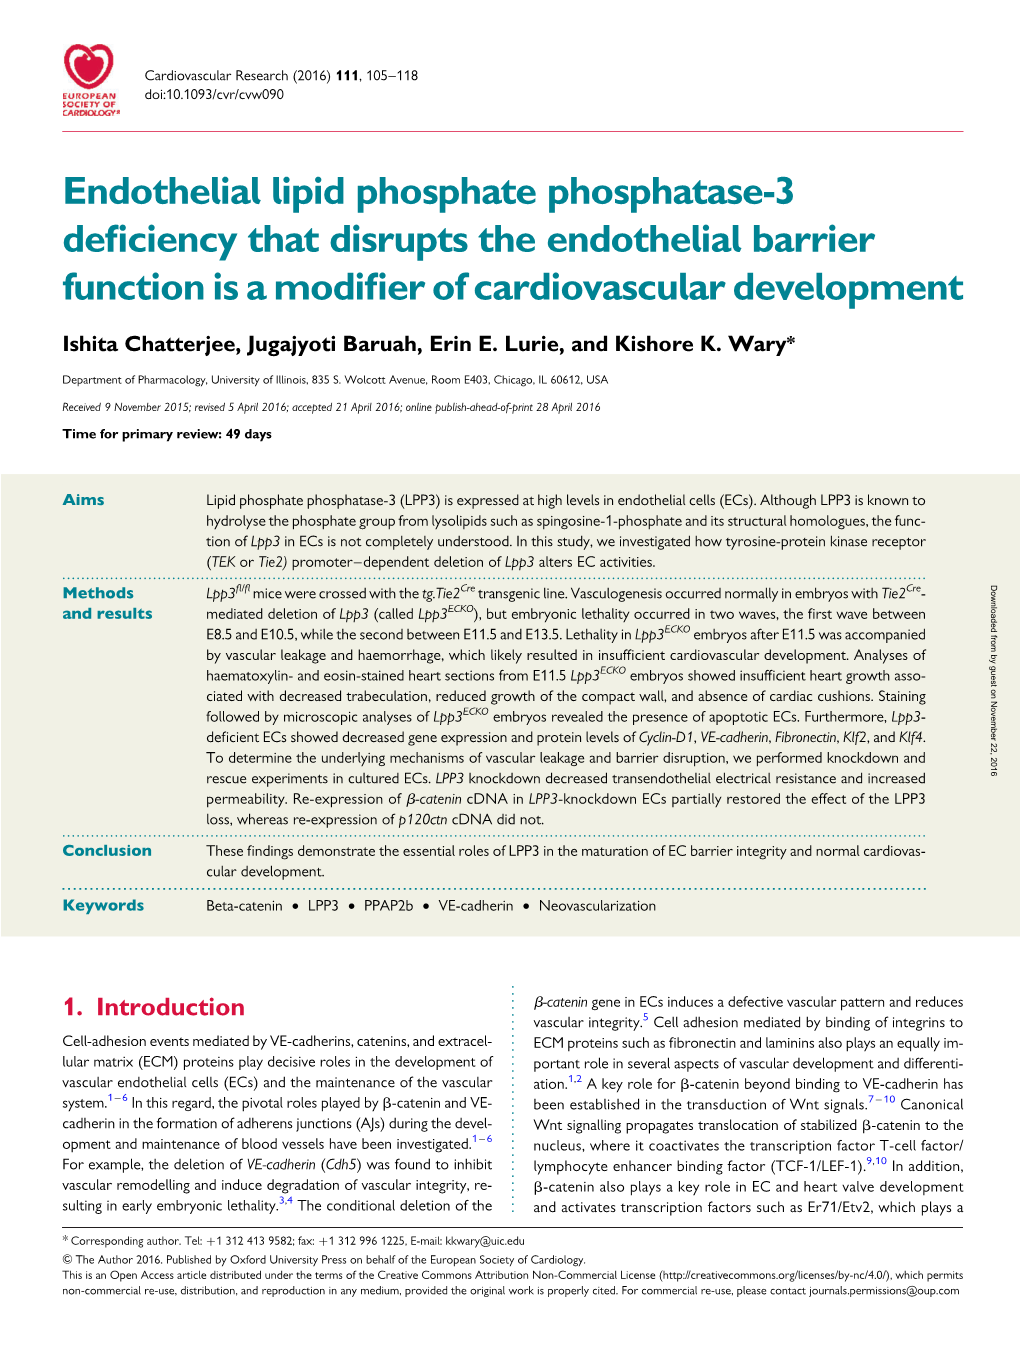 Endothelial Lipid Phosphate Phosphatase-3 Deficiency That